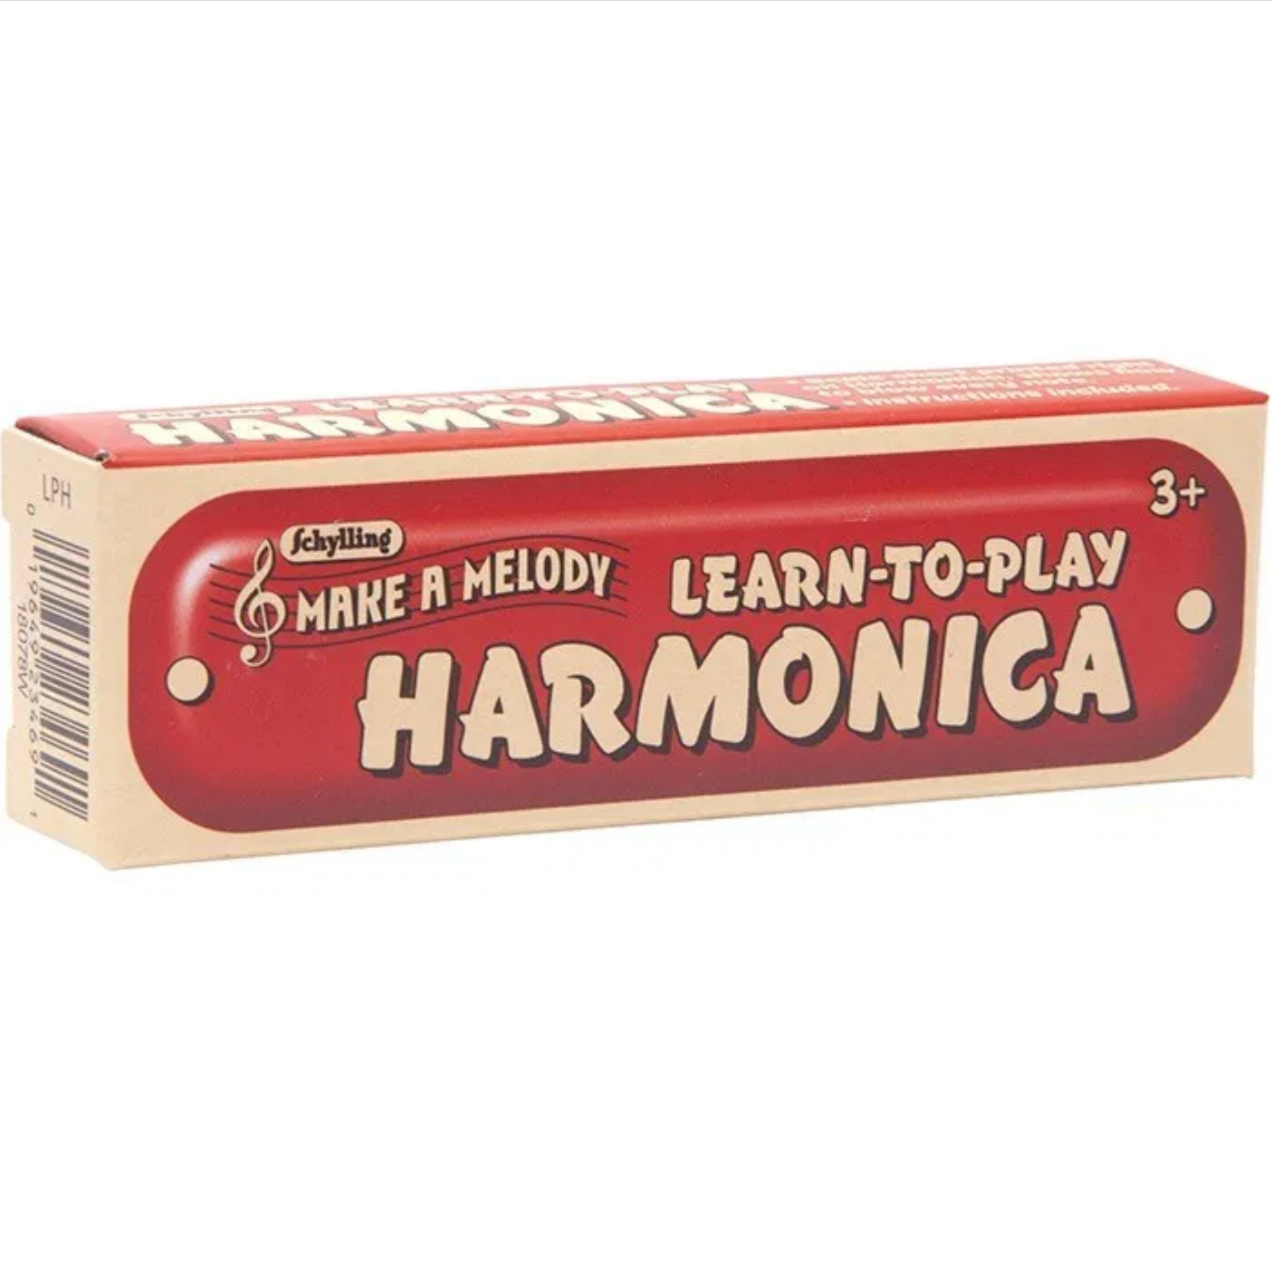 Learn to Play Harmonica 3yrs+